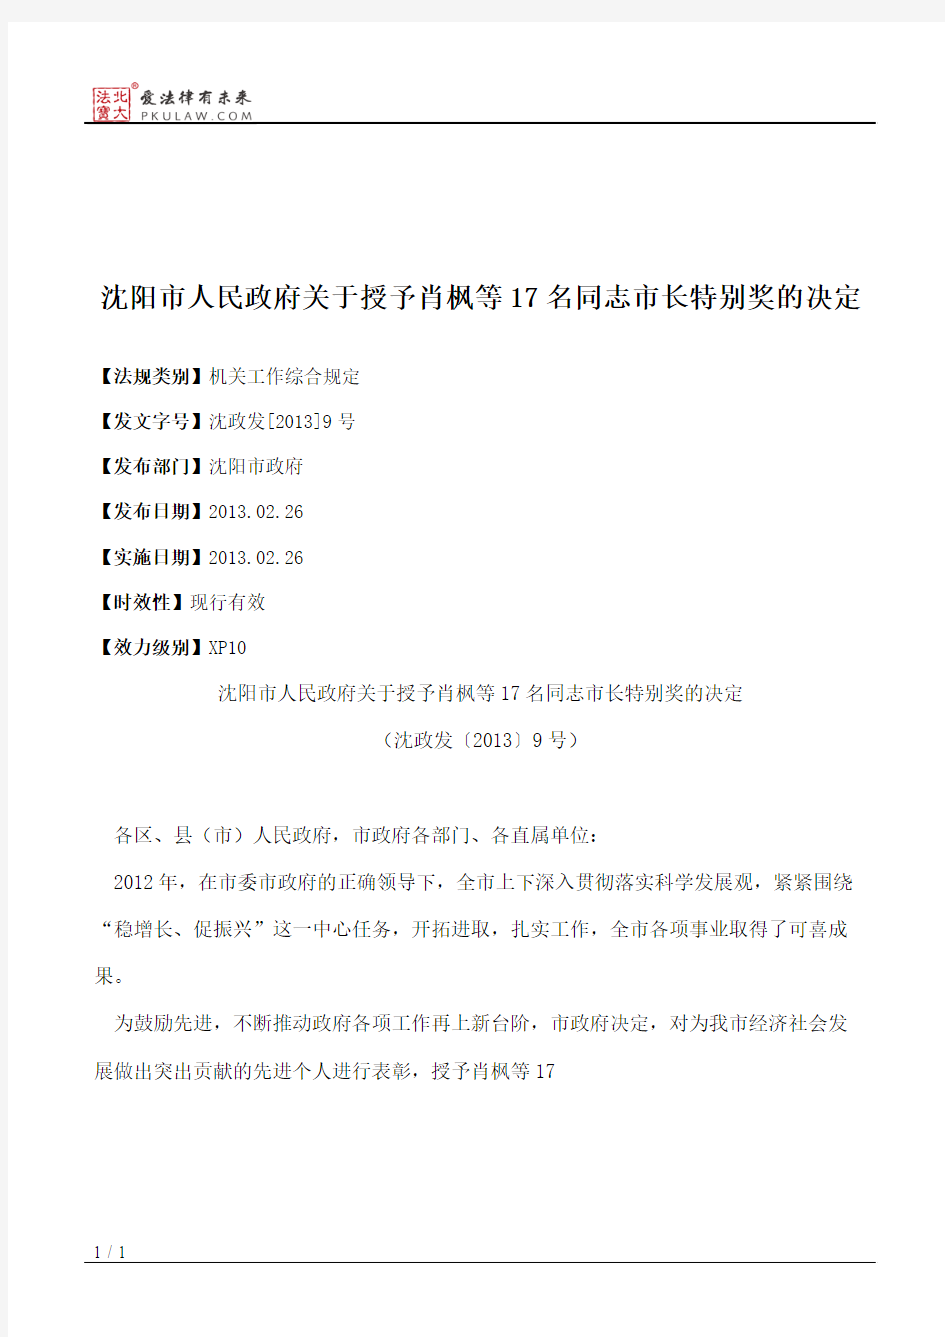 沈阳市人民政府关于授予肖枫等17名同志市长特别奖的决定